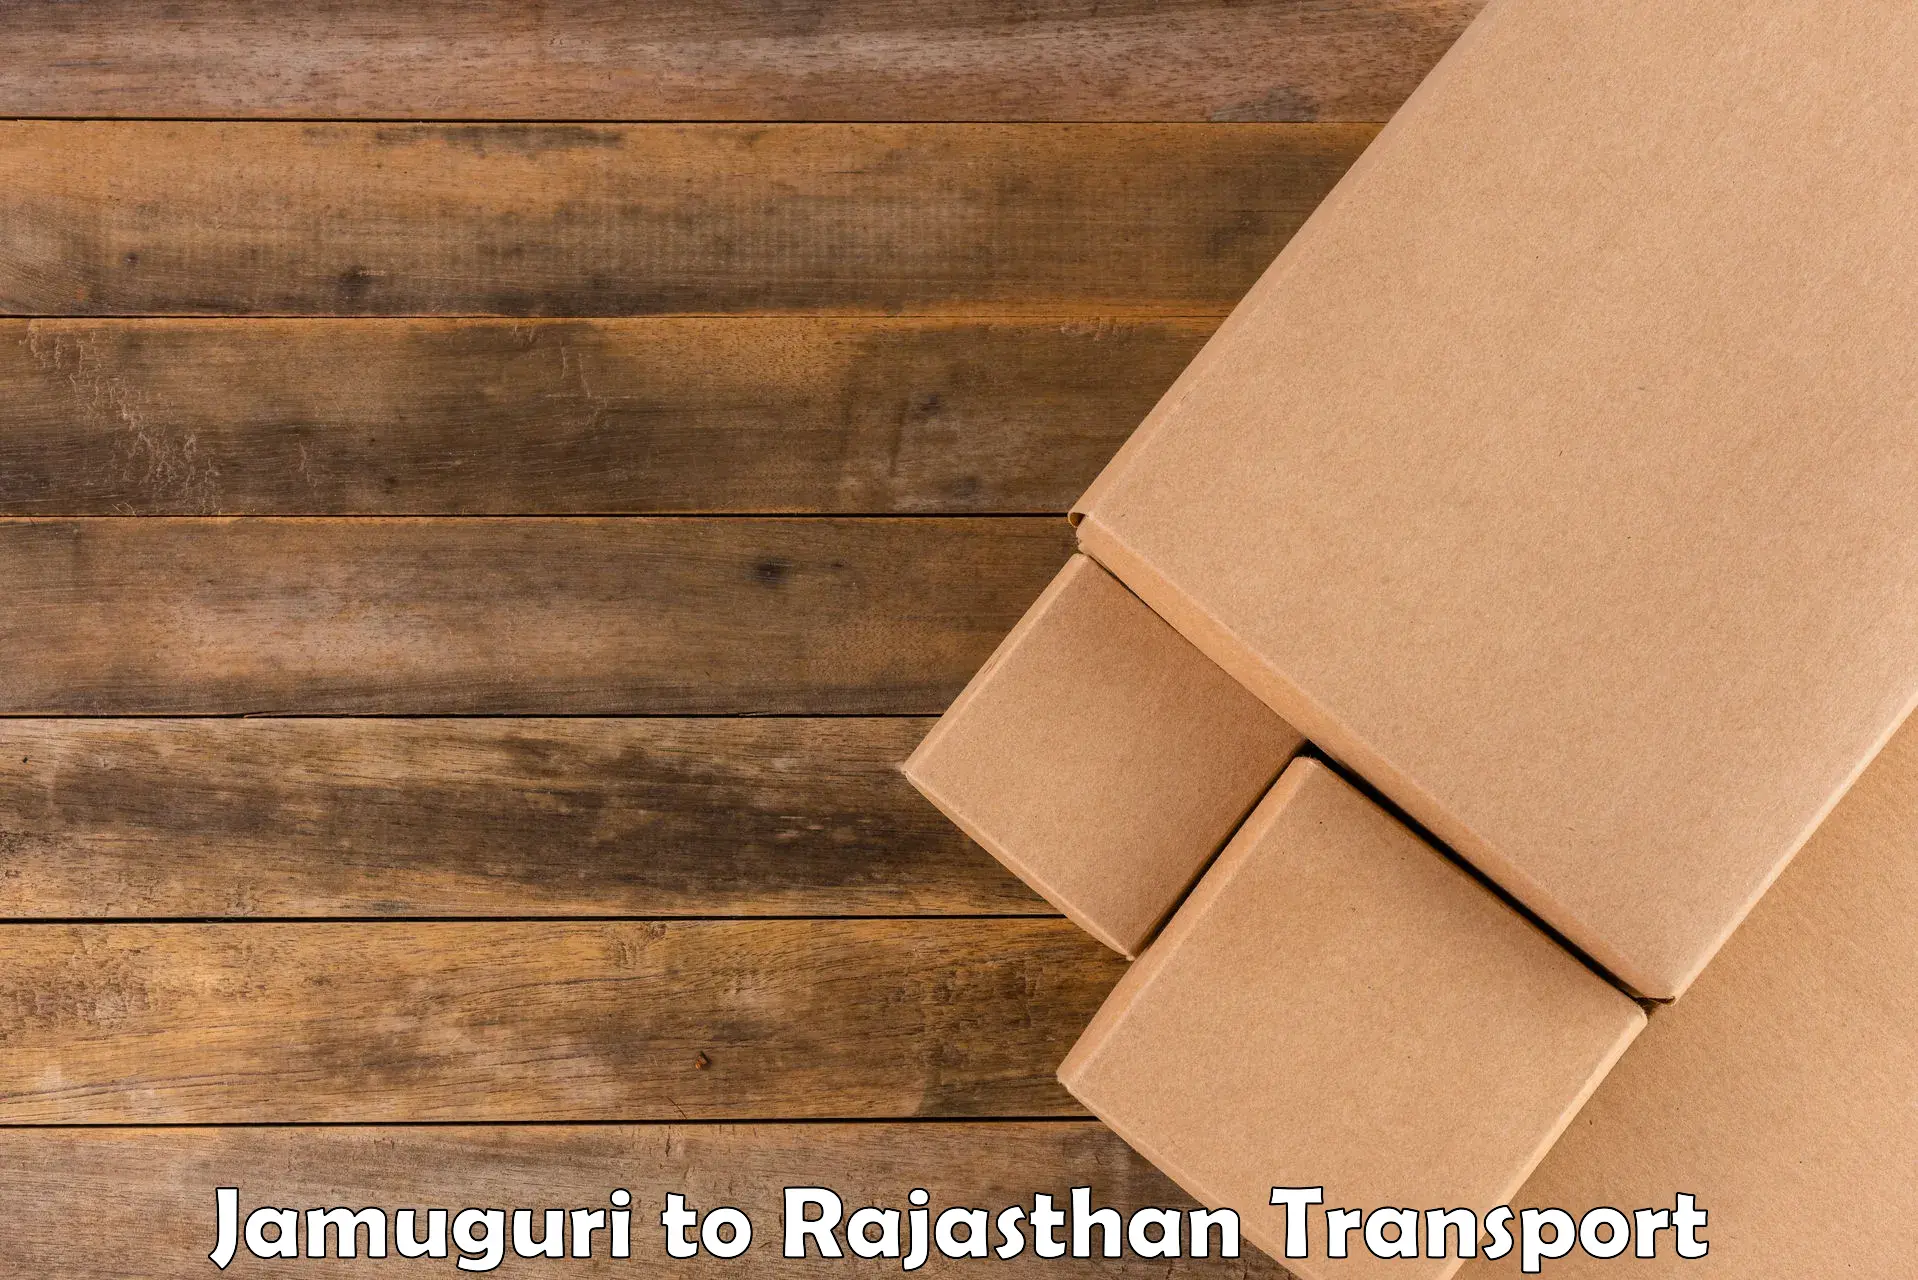 Cargo transport services in Jamuguri to Rajgarh Rajasthan